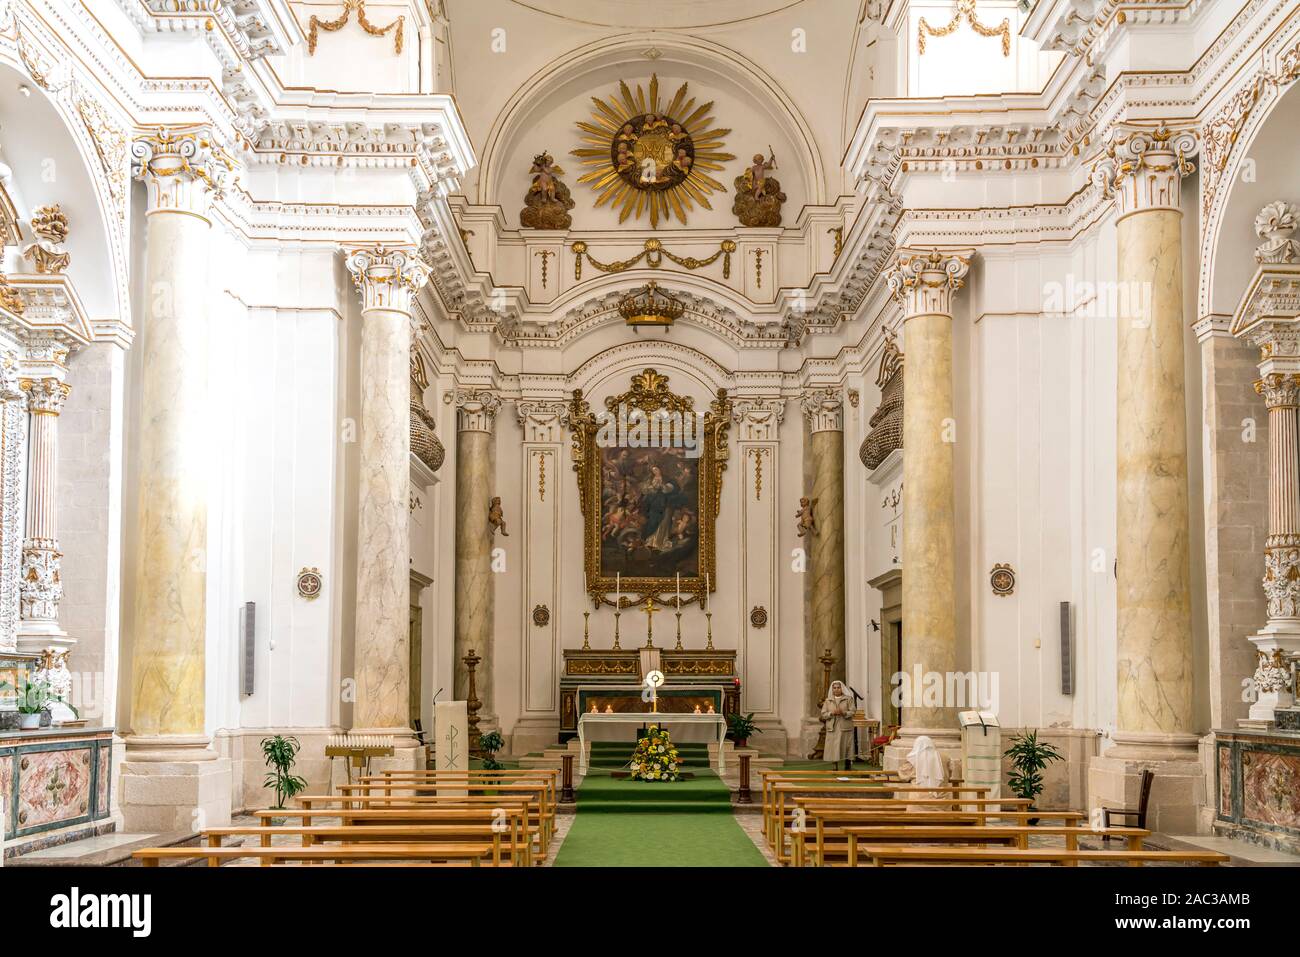 Innenraum der Kirche Santa Maria della Concezione, Insel Ortigia, Syrakus, Sizilien, Italien, Europa  |  church Santa Maria della Concezione interior, Stock Photo